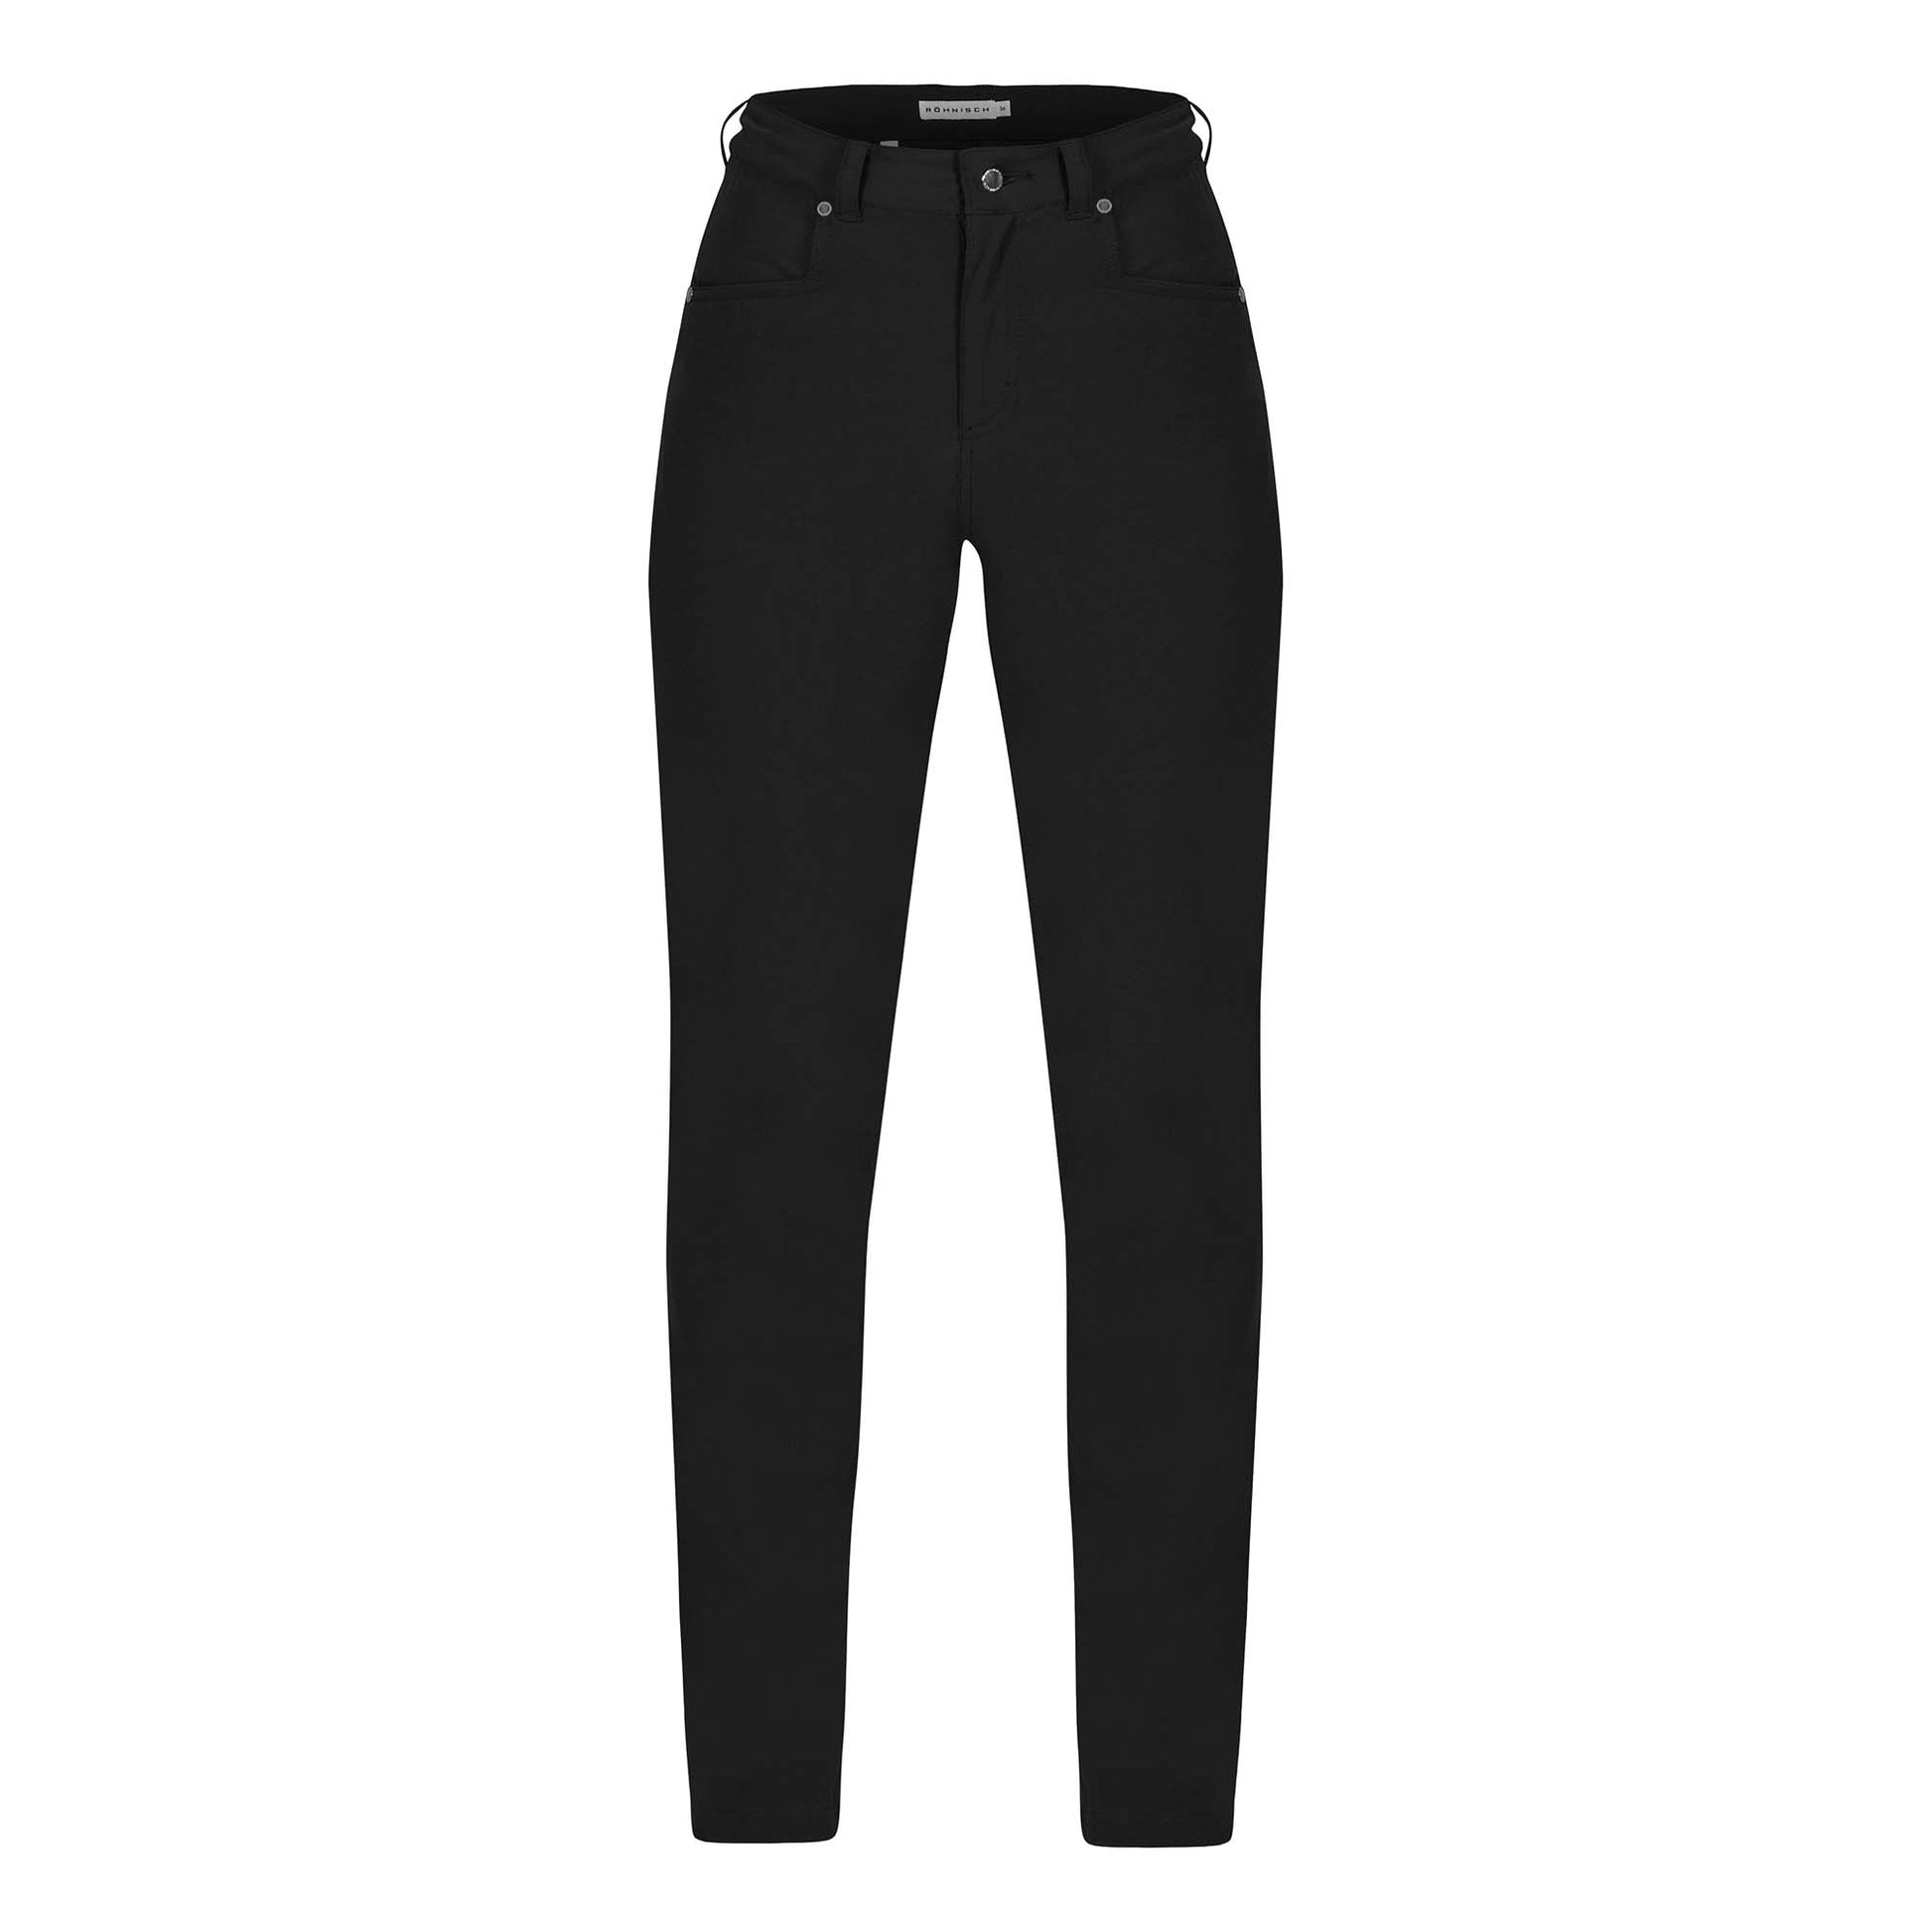 Rohnisch Ladies Lightweight Comfort Trousers in Black